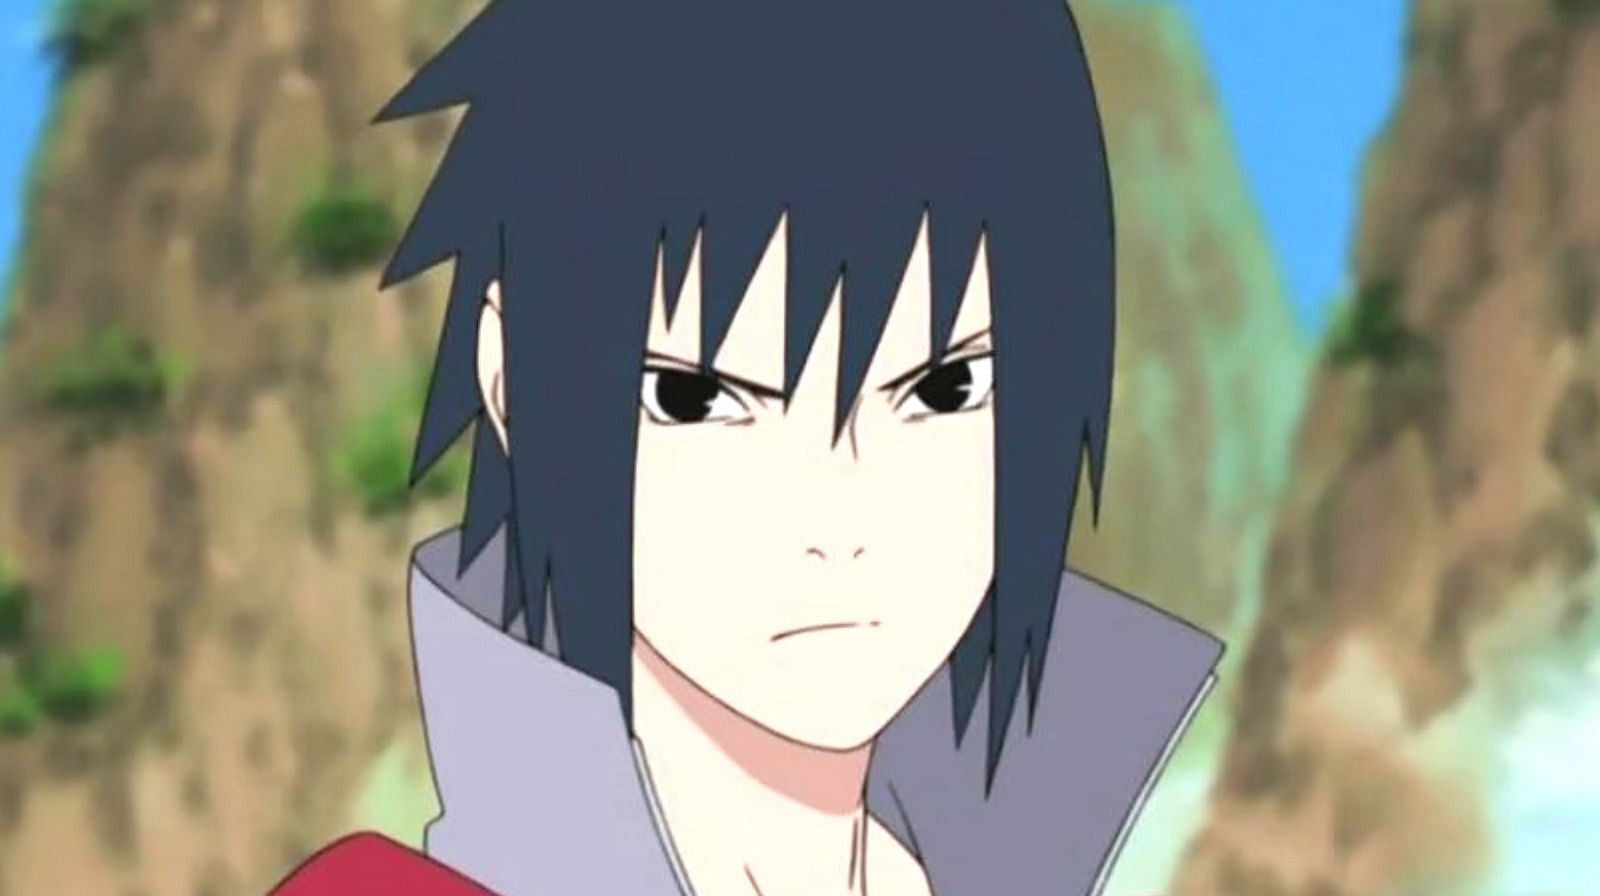 Sasuke Uchiha from the Naruto series (image via Pierrot)